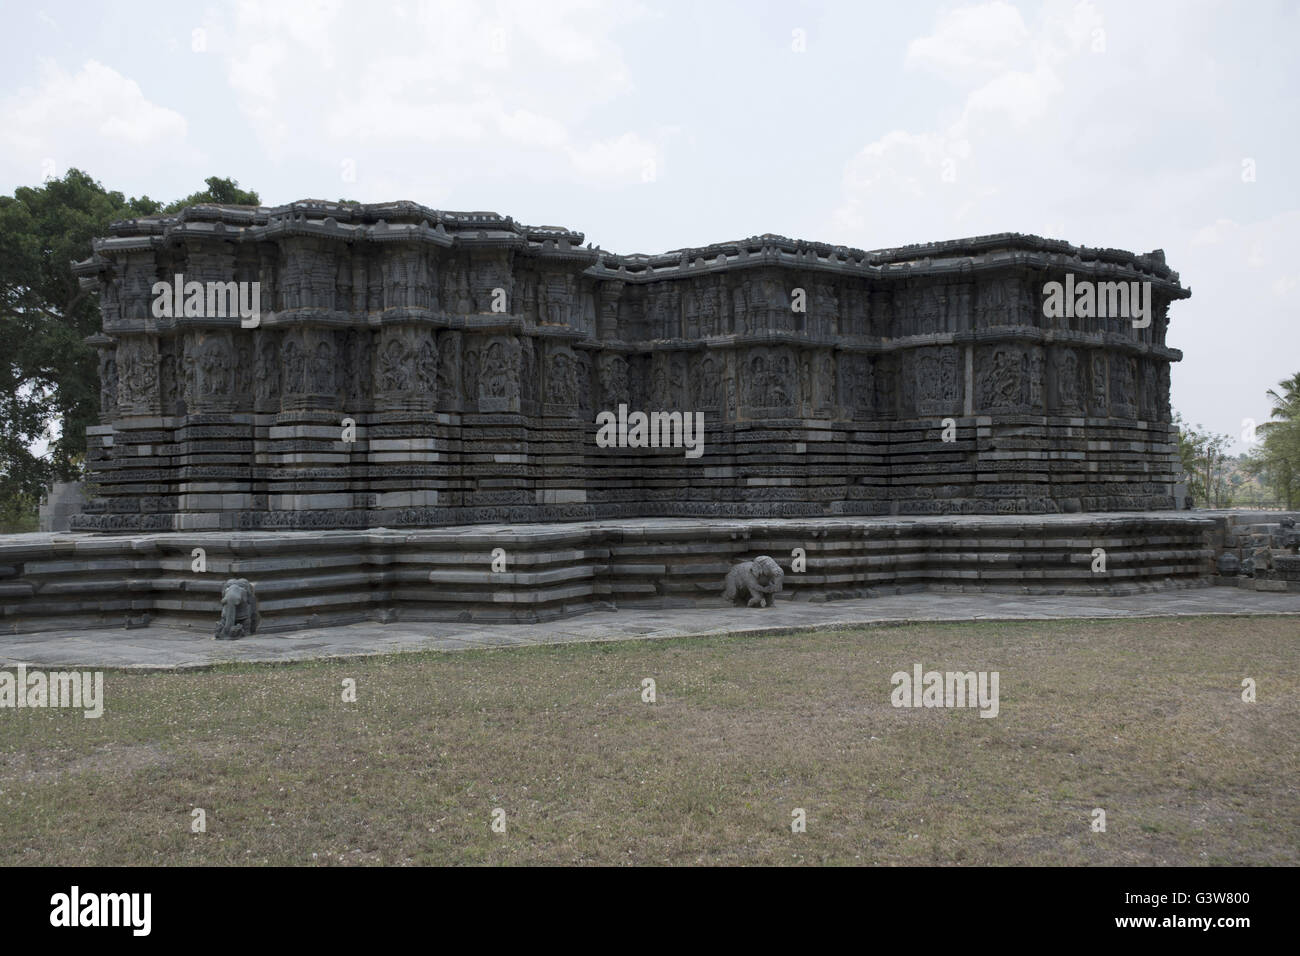 Temple, kedareshwara halebid, Karnataka, Inde. vue depuis le sud-ouest. Banque D'Images